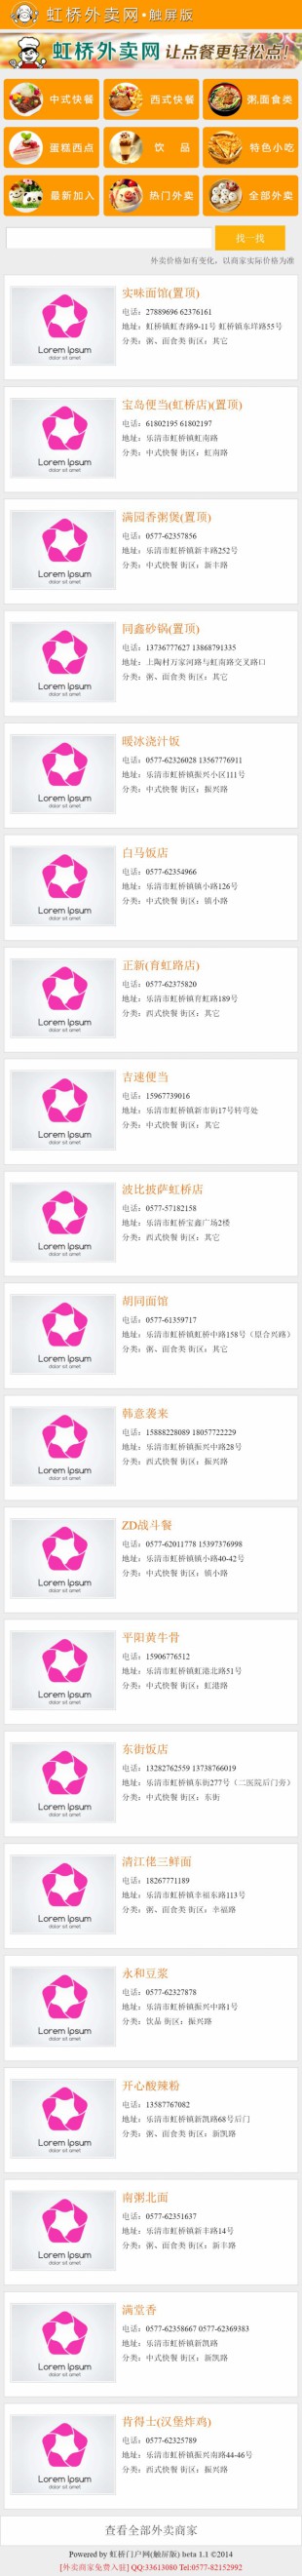 中文手机wap订餐外卖购物网站模板建设手机图片